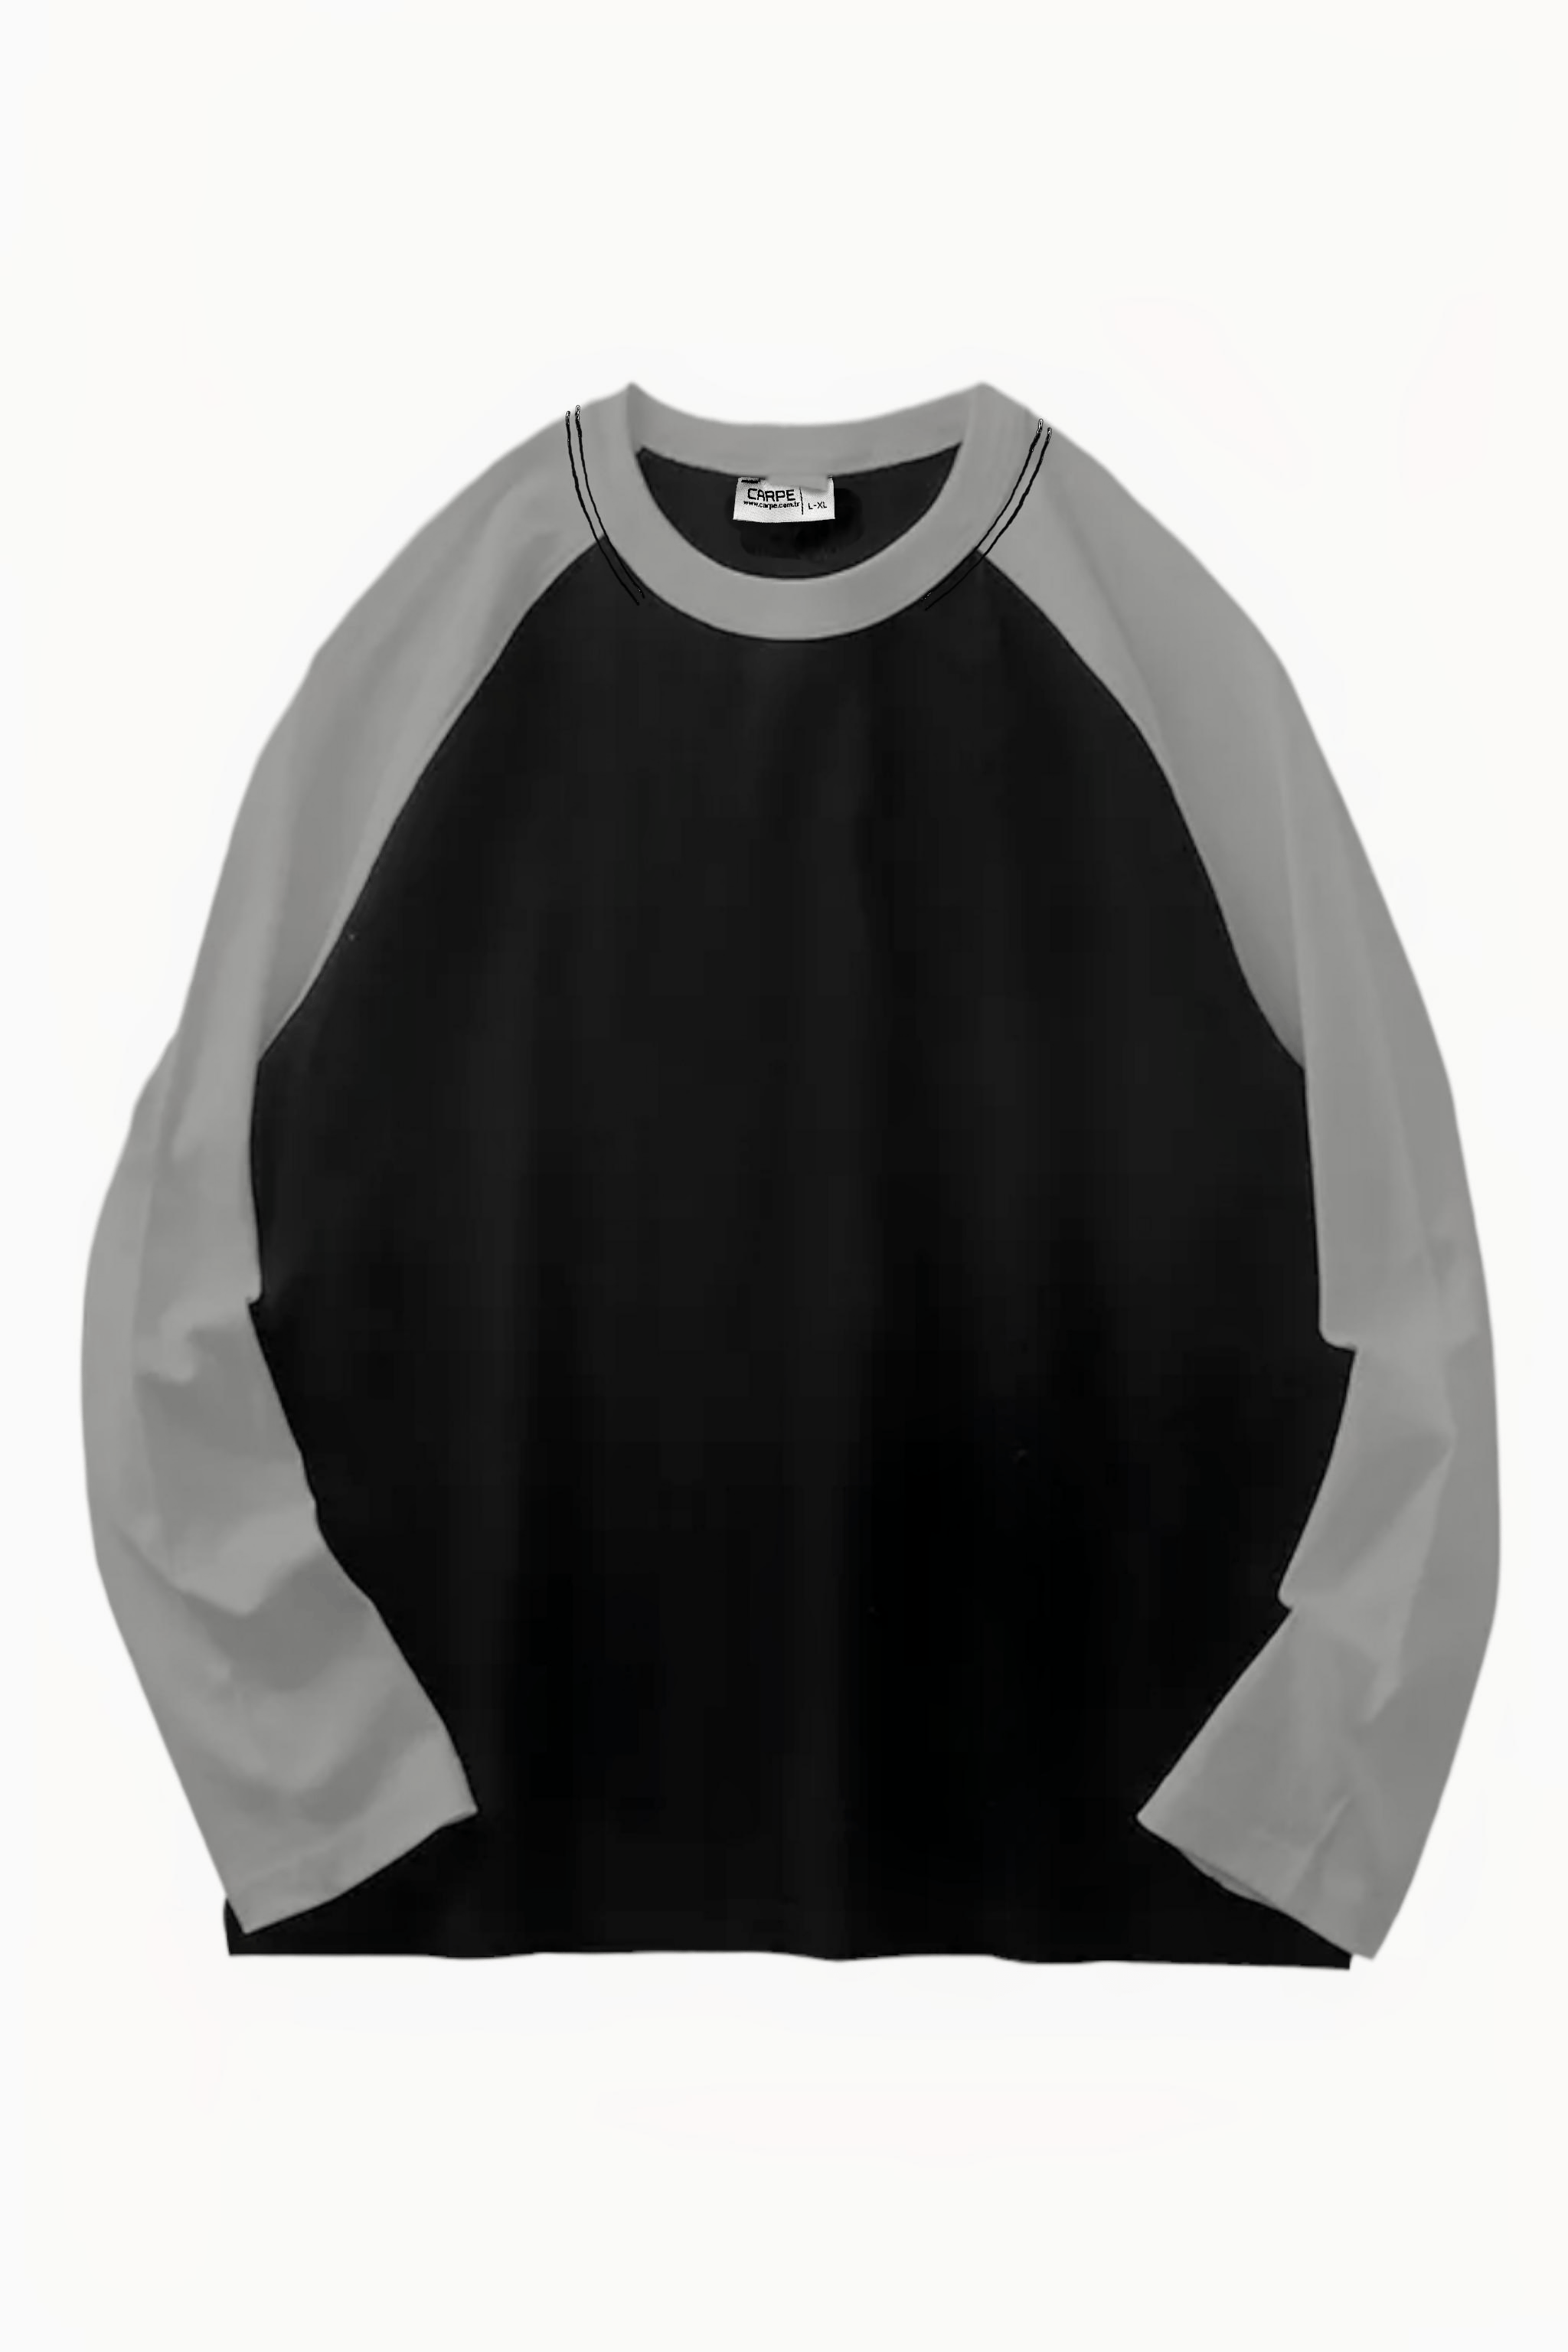 Siyah-Gri Raglan Oversize Sweatshirt Ürününü Hemen İncele